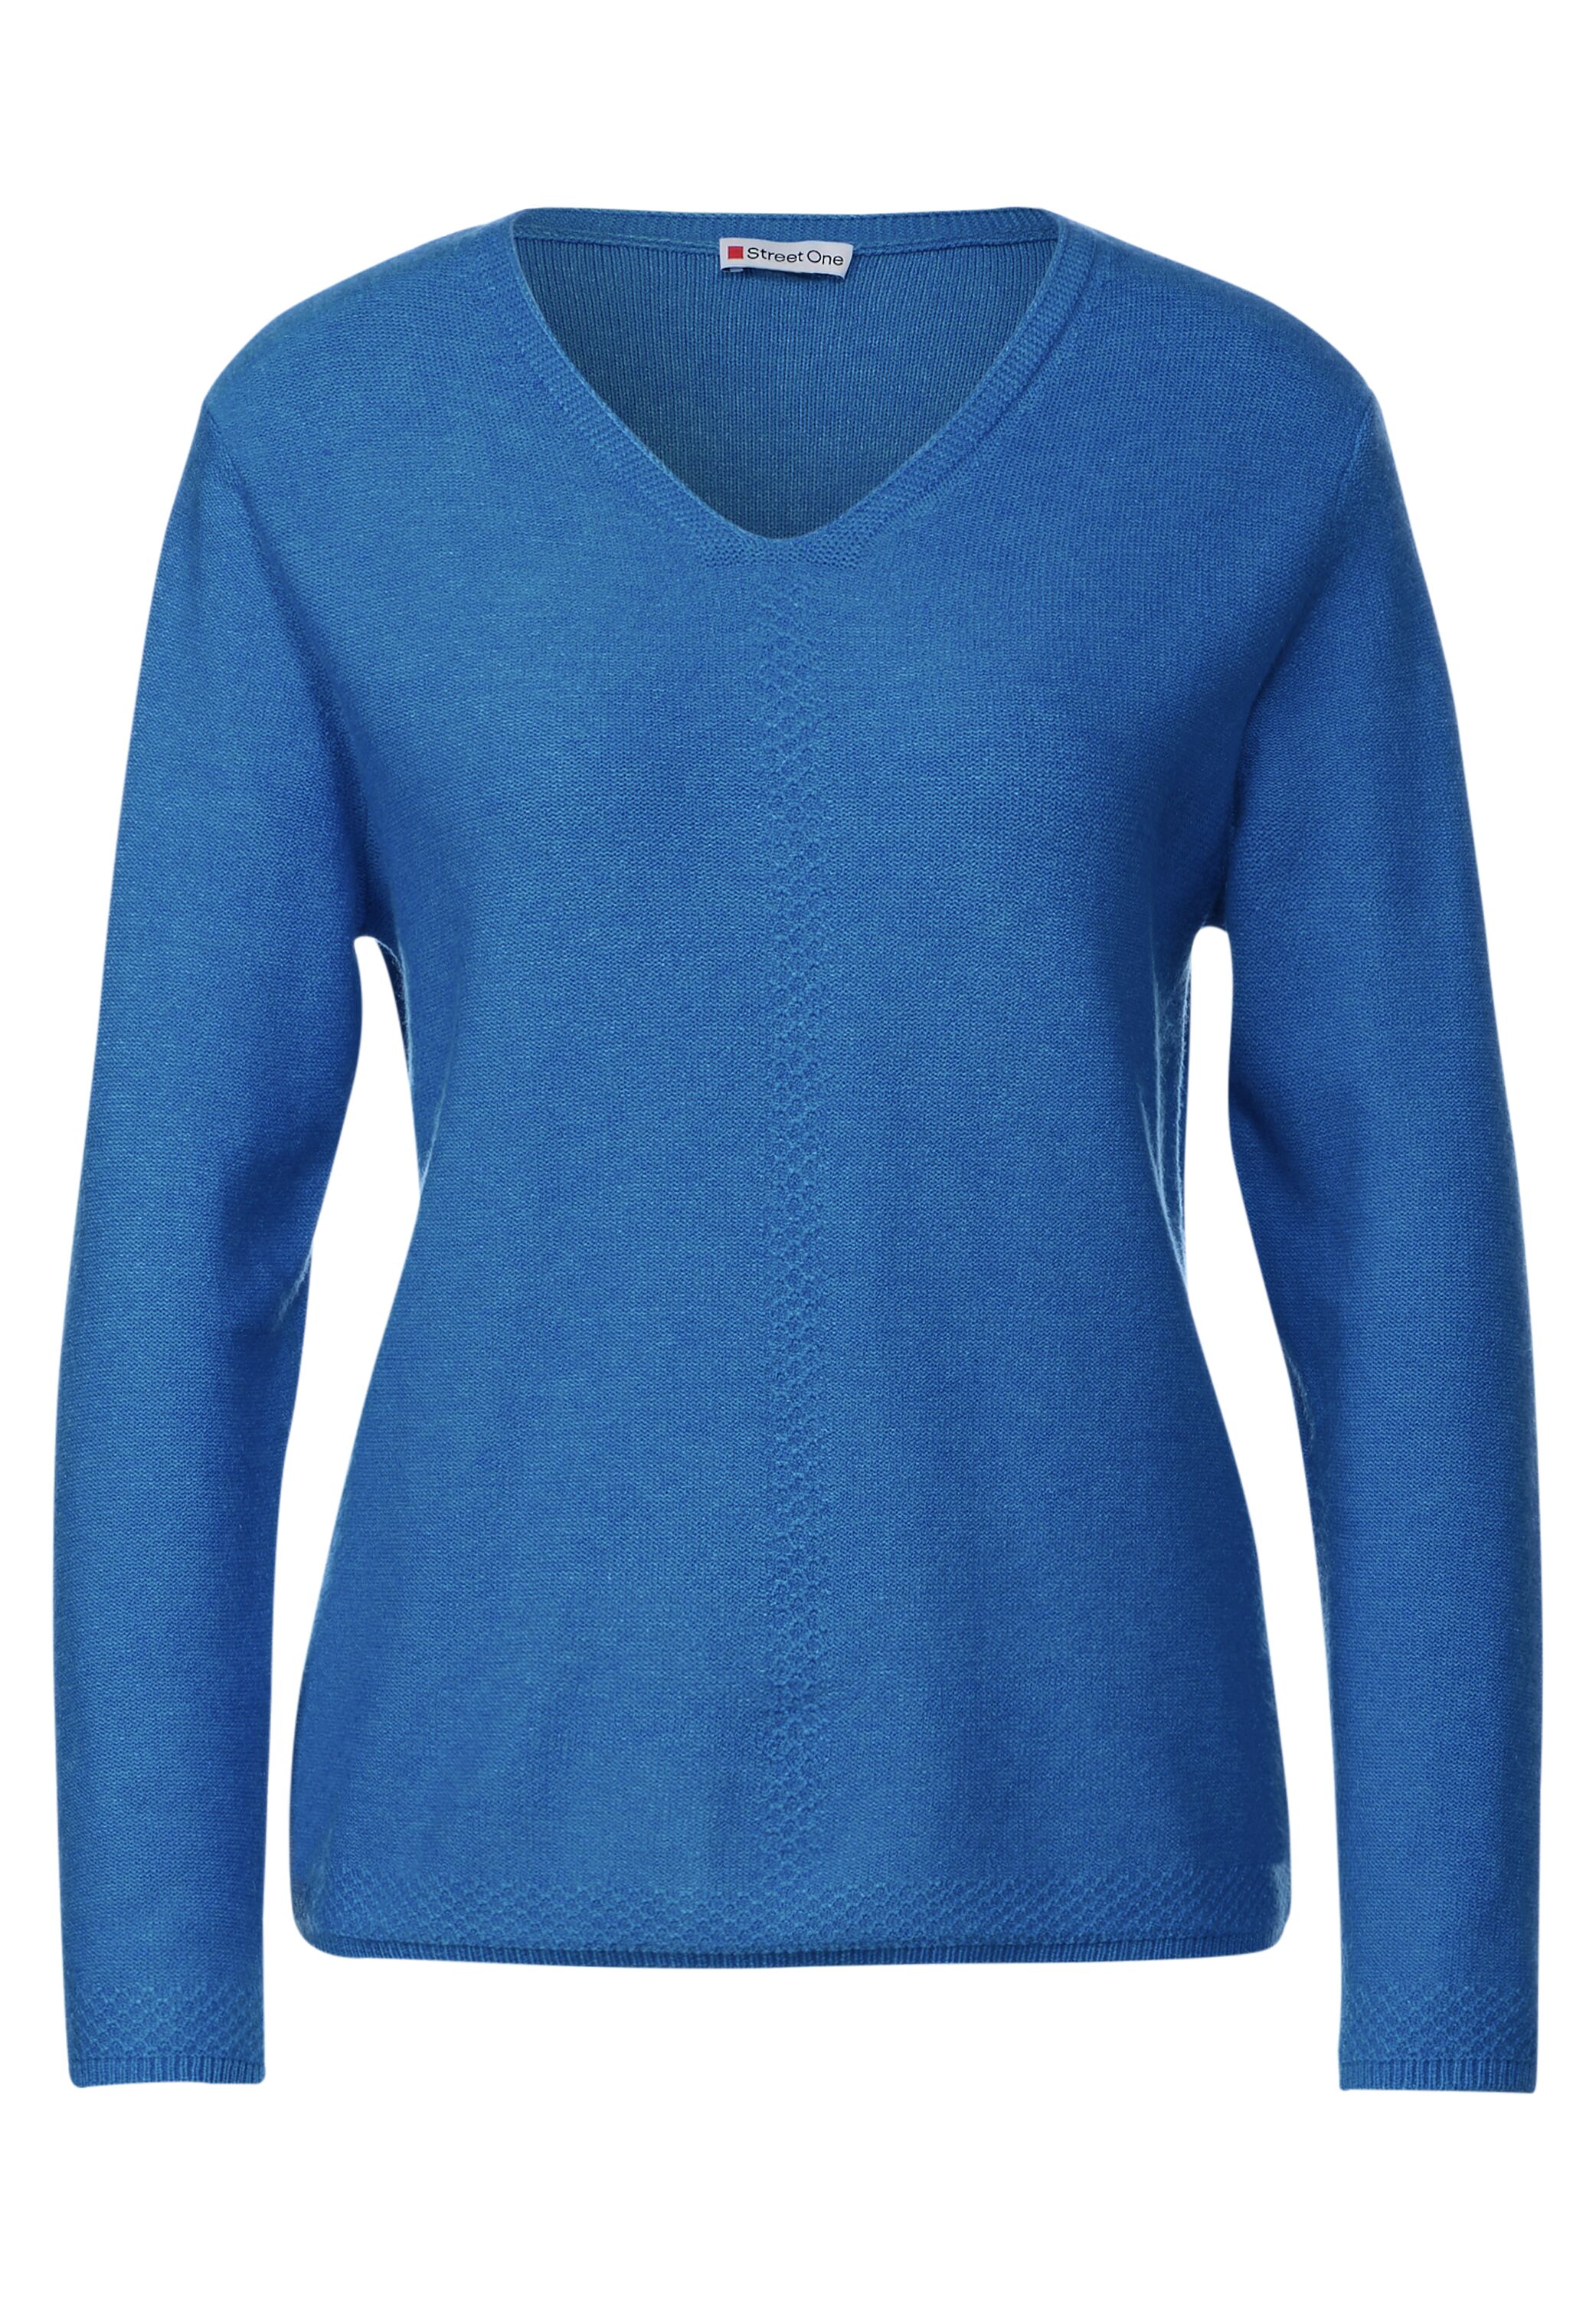 Street One V-Ausschnitt Pullover in Intense Gentle Blue Melange  A302632-15312 - CONCEPT Mode